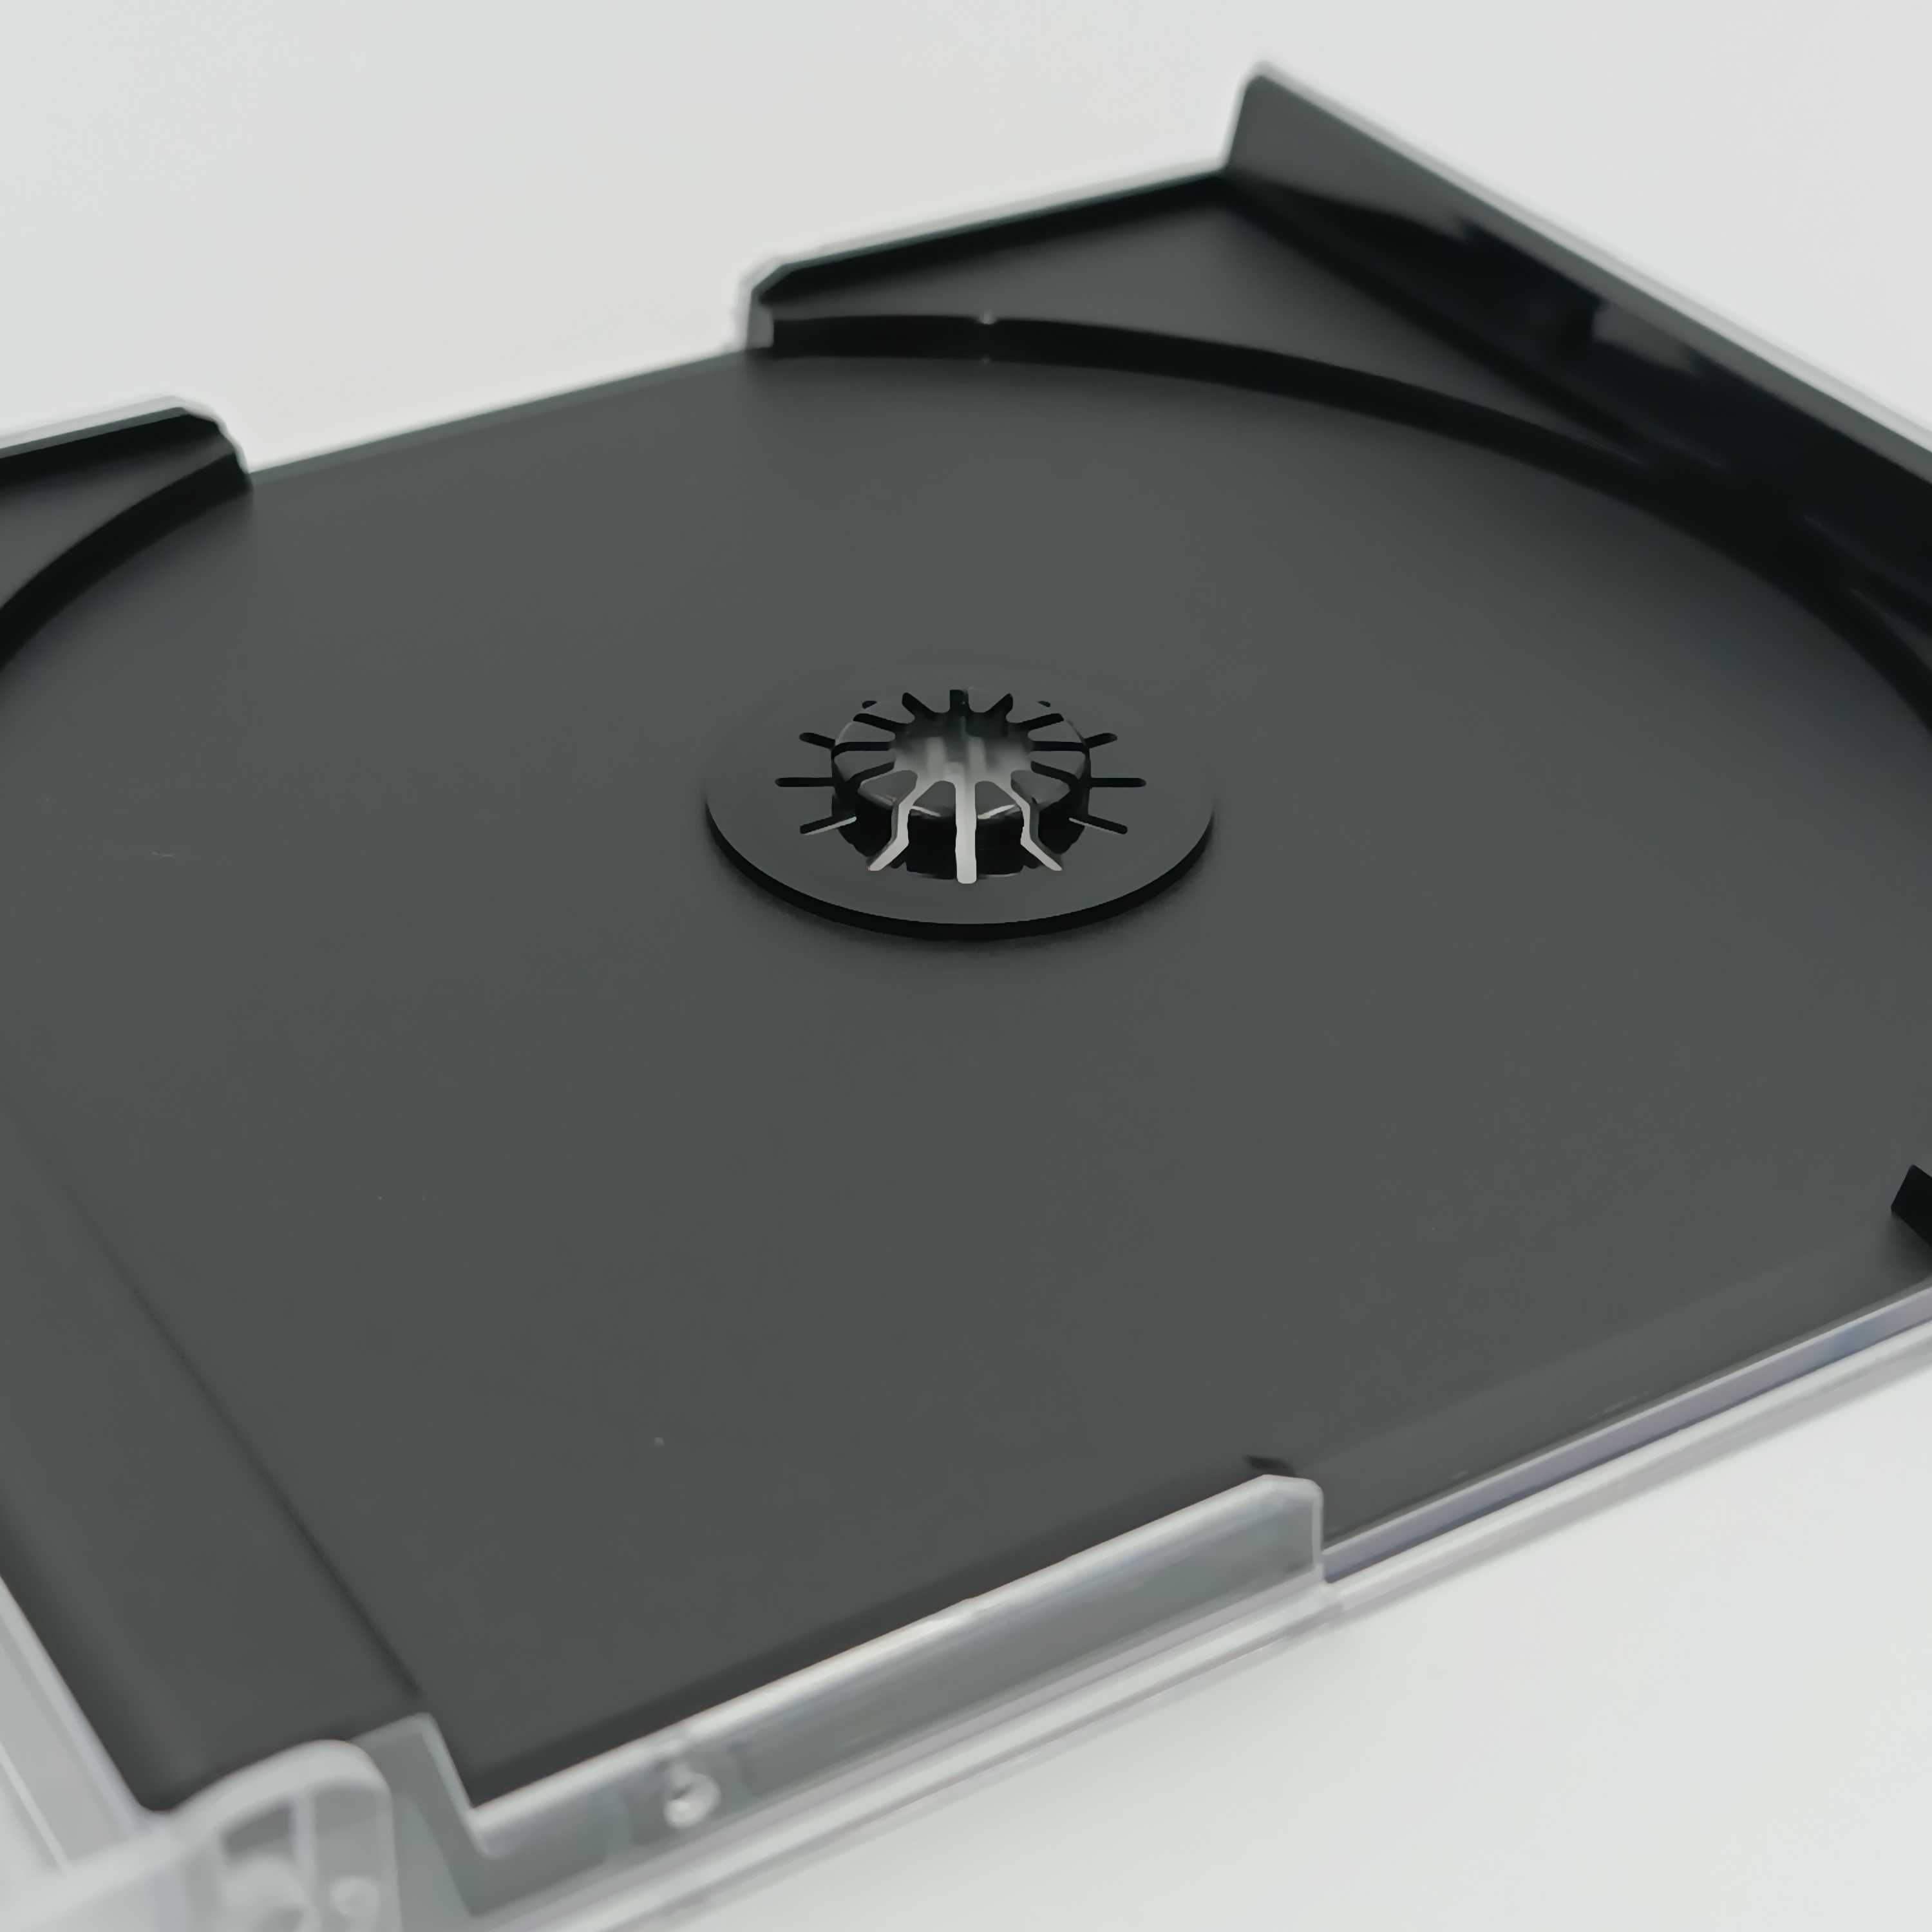 10x Nowe opakowanie gry box standard case Playstation PS1/PSX/PSOne